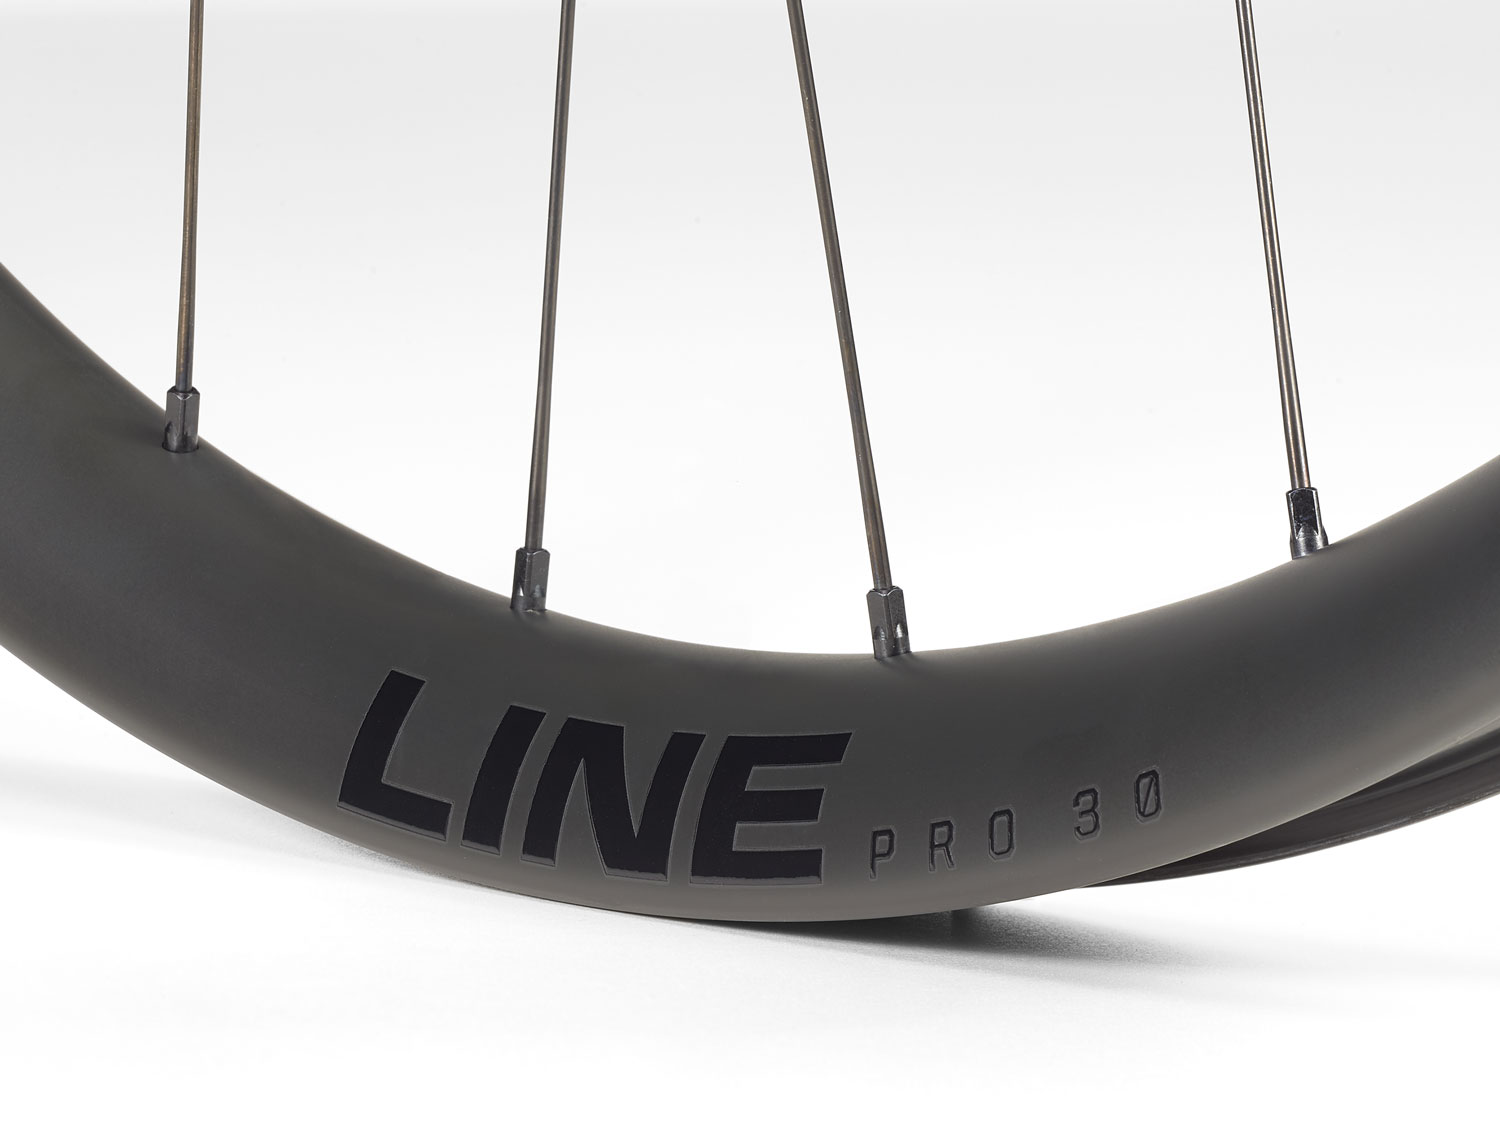 Bontrager Carbon Line Wheels - Line Pro 30